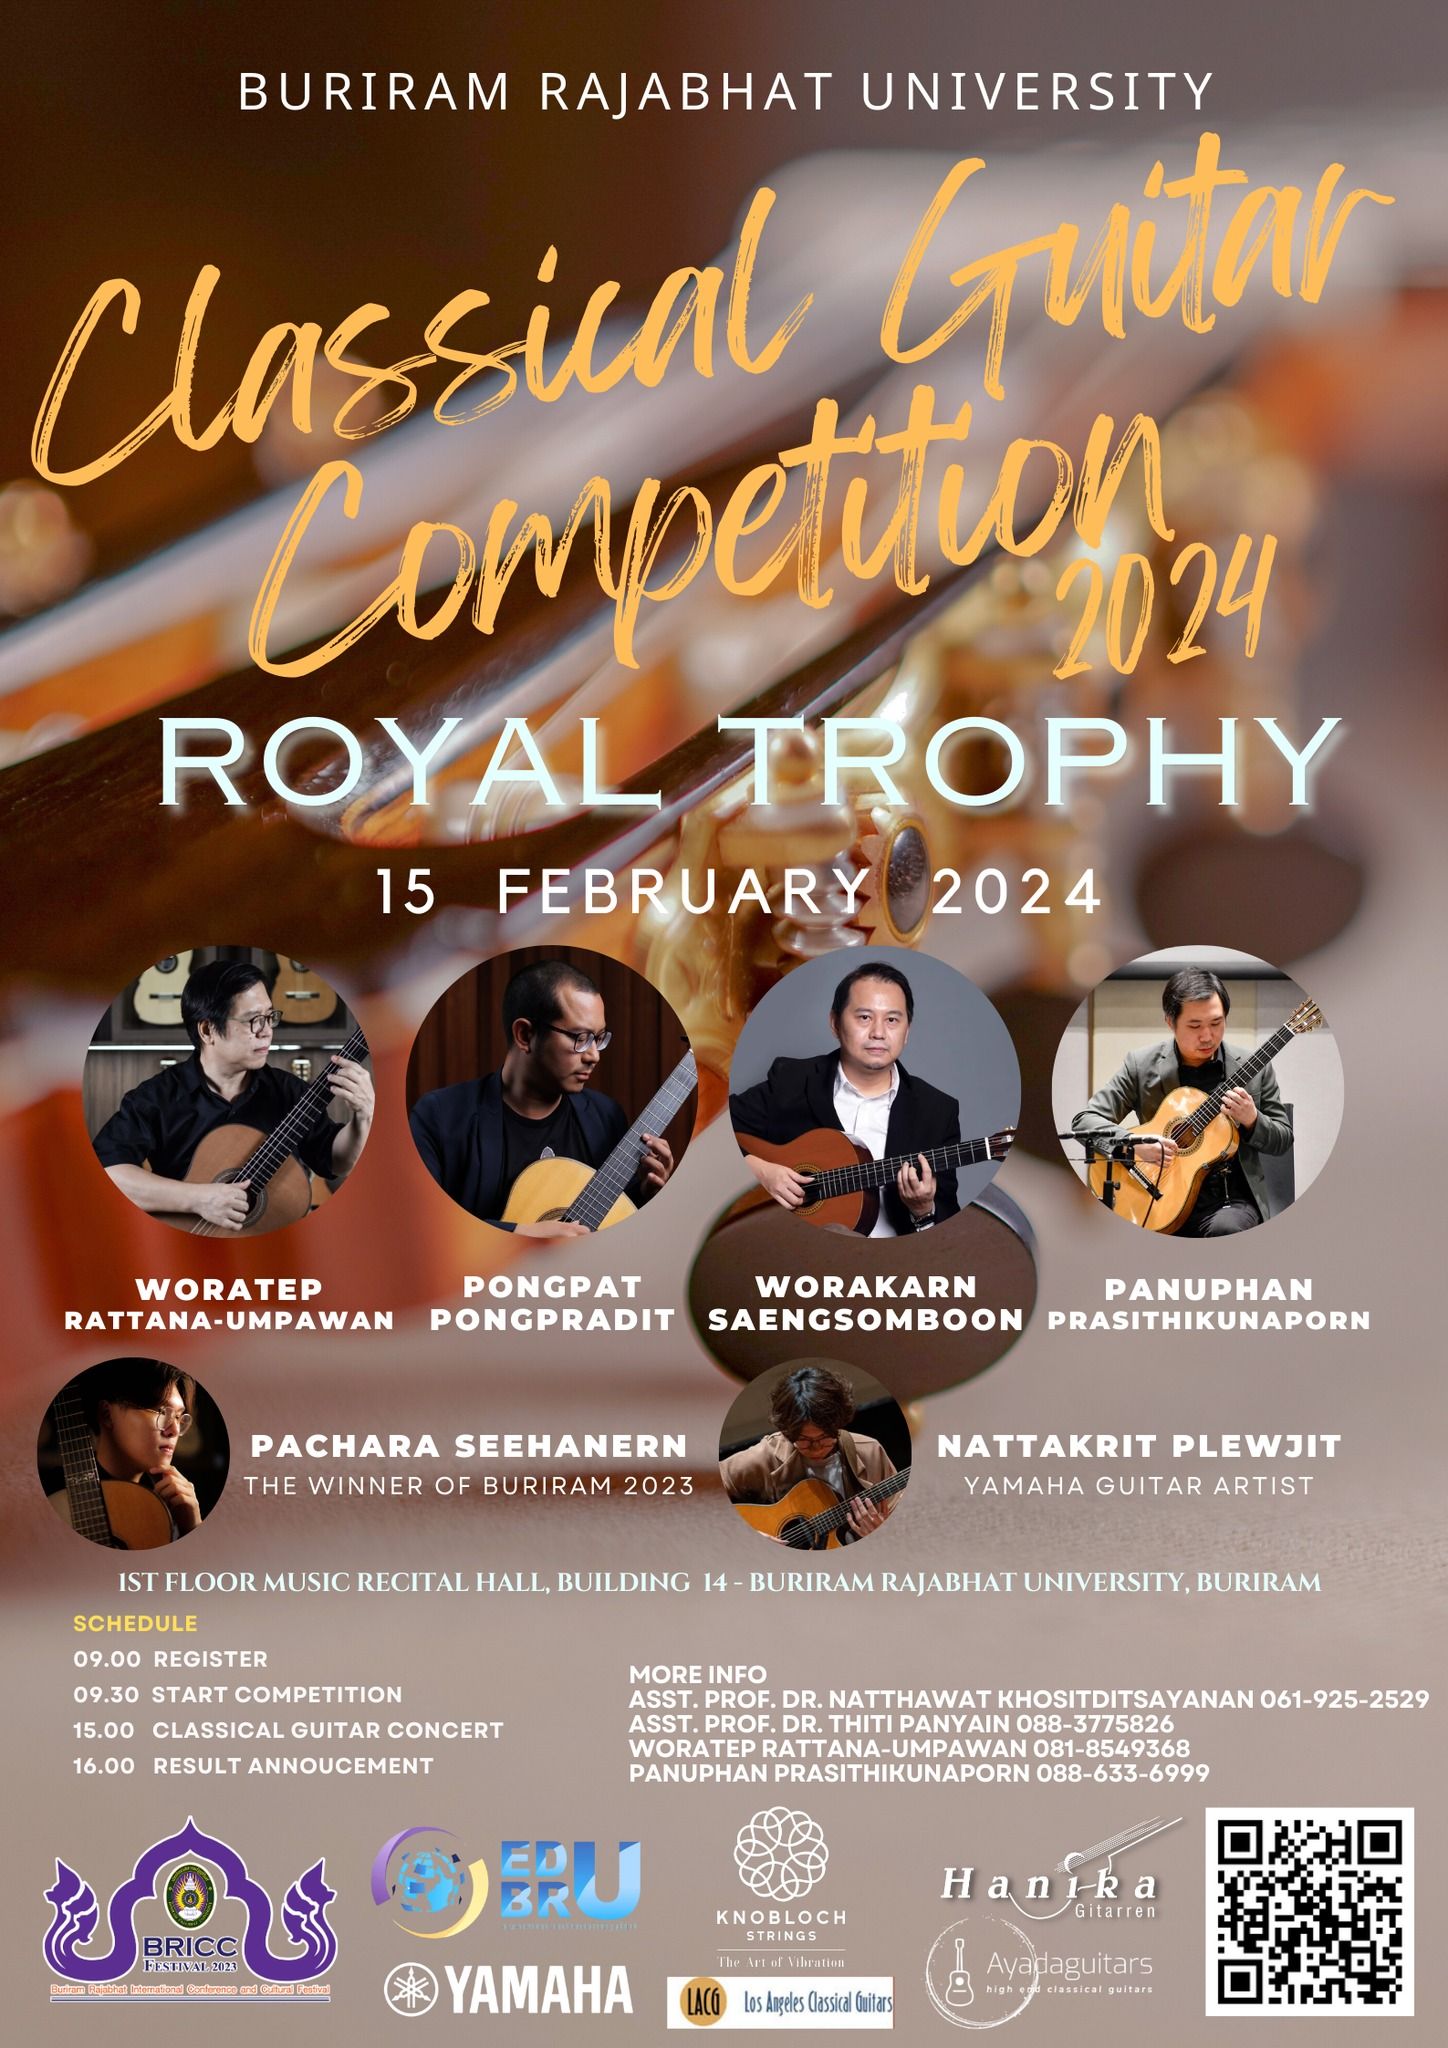 สาขาวิชาดนตรีศึกษา คณะครุศาสตร์ มหาวิทยาลัยราชภัฏบุรีรัมย์ ขอเชิญ​ชวนเข้าร่วม “การแข่งขันกีตาร์คลาสสิก ระดับอุดมศึกษา (BRU Classical Guitar Competition)”